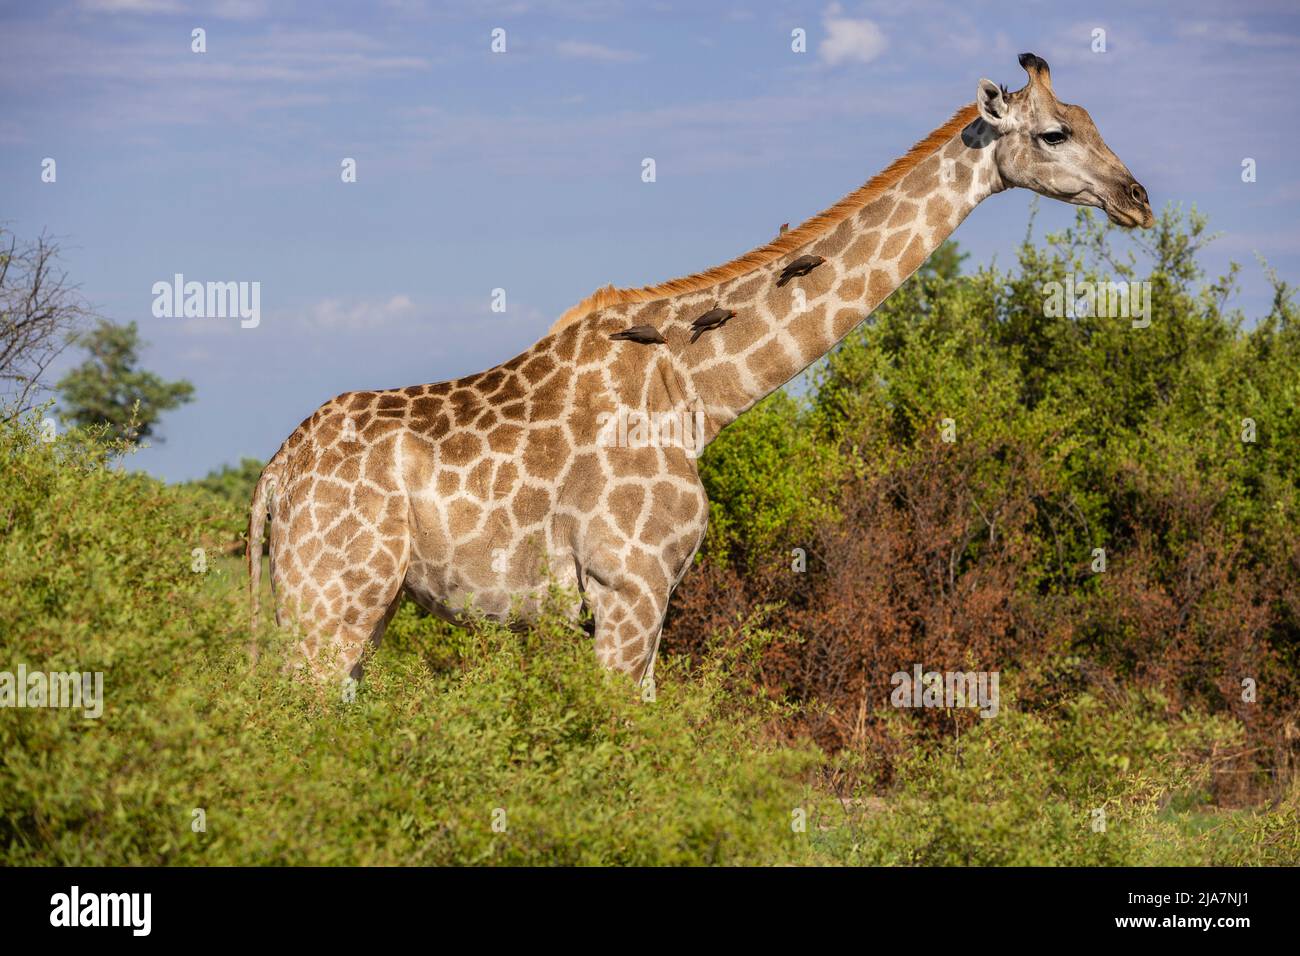 Girafe du sud avec des boeufs de la prairie du delta de l'Okavango, Botswana Banque D'Images